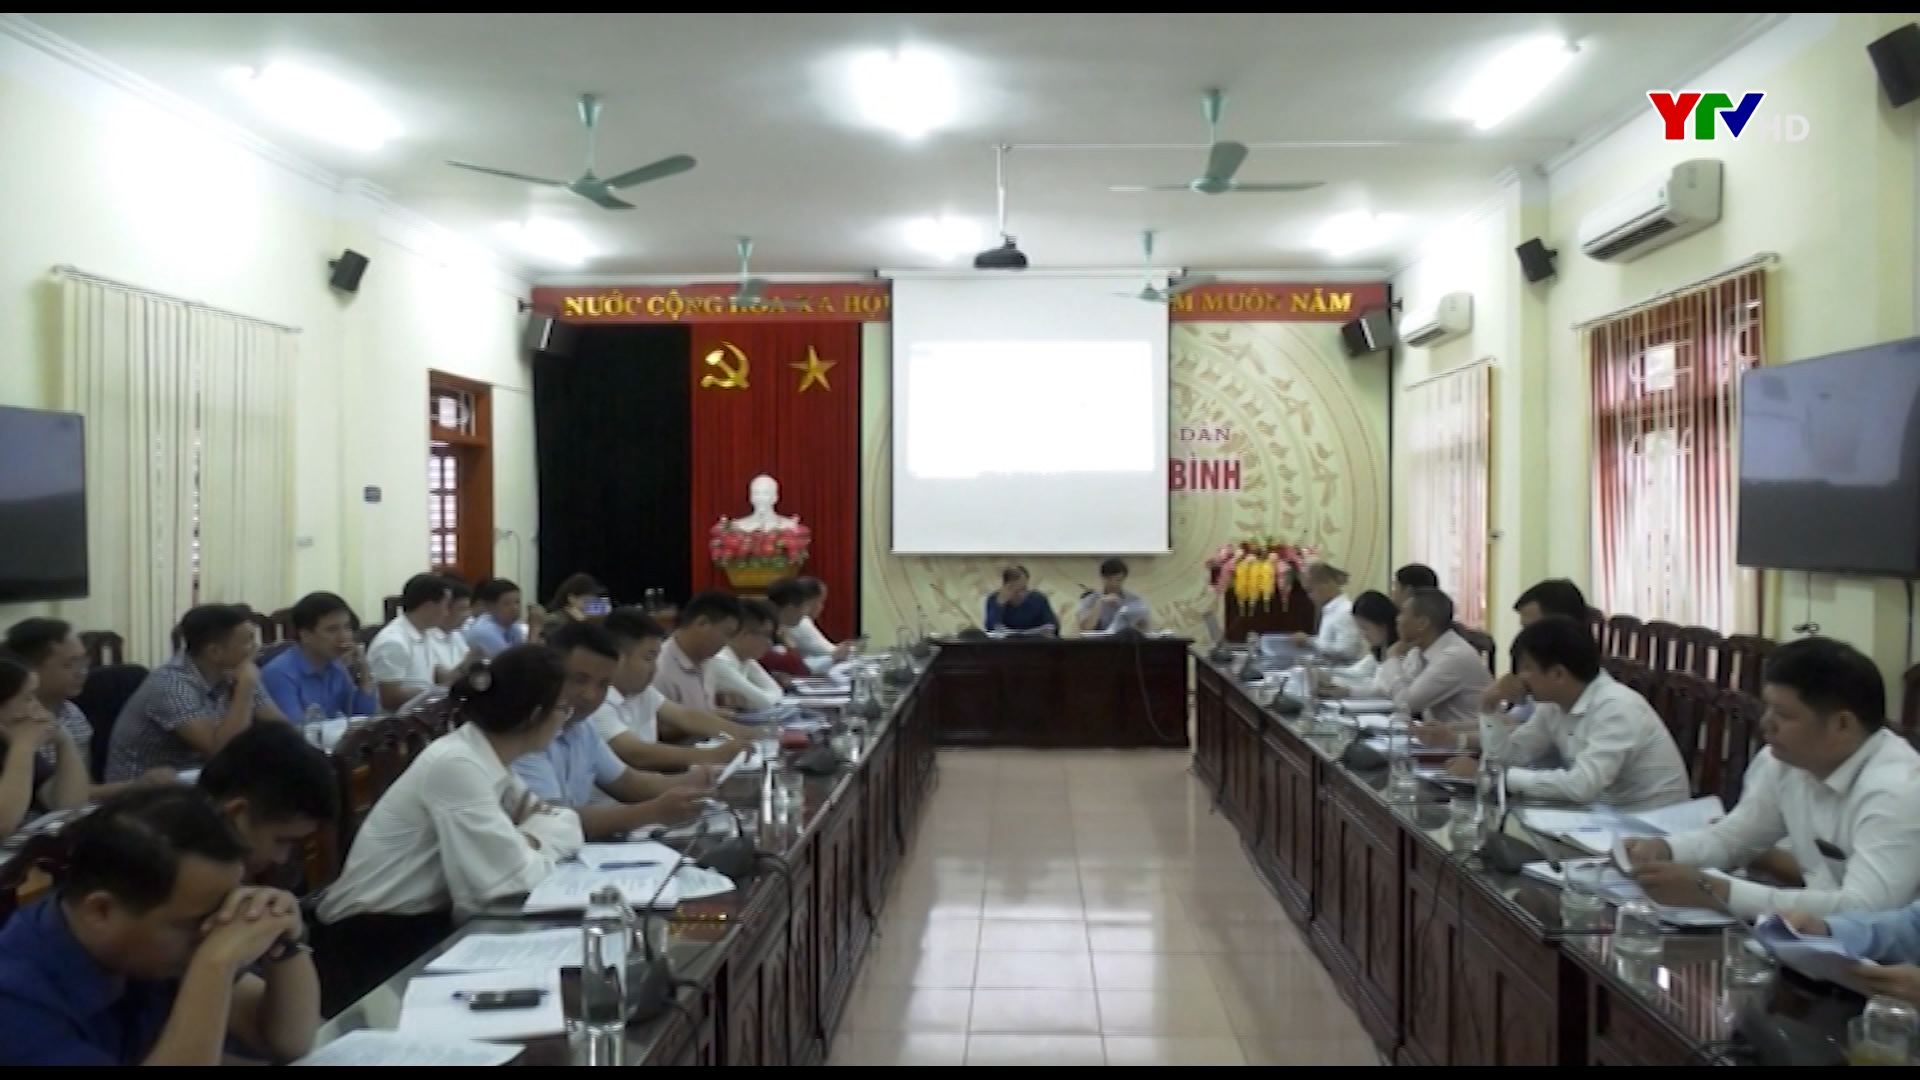 Hội chợ Thương mại và Du lịch huyện Yên Bình dự kiến diễn ra vào ngày 6 /11/2020